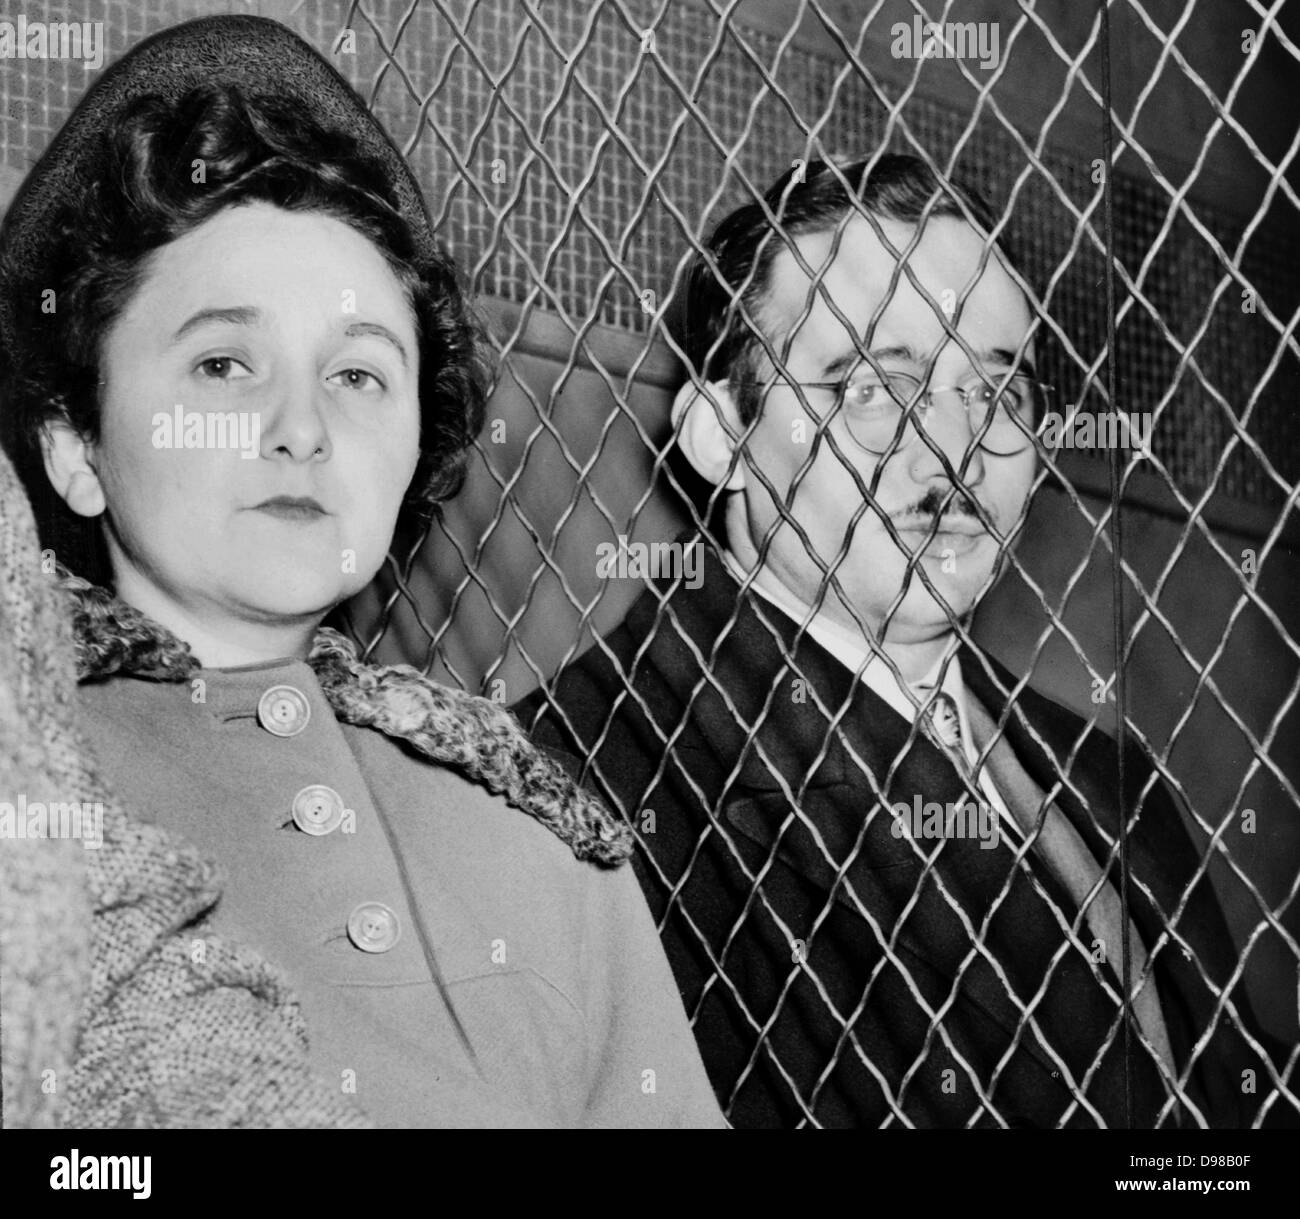 Julius Rosenberg (12 maggio 1918 - 19 giugno 1953) e Ethel Rosenberg (28 settembre 1915 - 19 giugno 1953) American comunisti, eseguito dopo che è stato trovato colpevole di cospirazione per commettere spionaggio. Le cariche erano in relazione al passaggio di informazioni su American bomba atomica per l'Unione Sovietica. Foto Stock